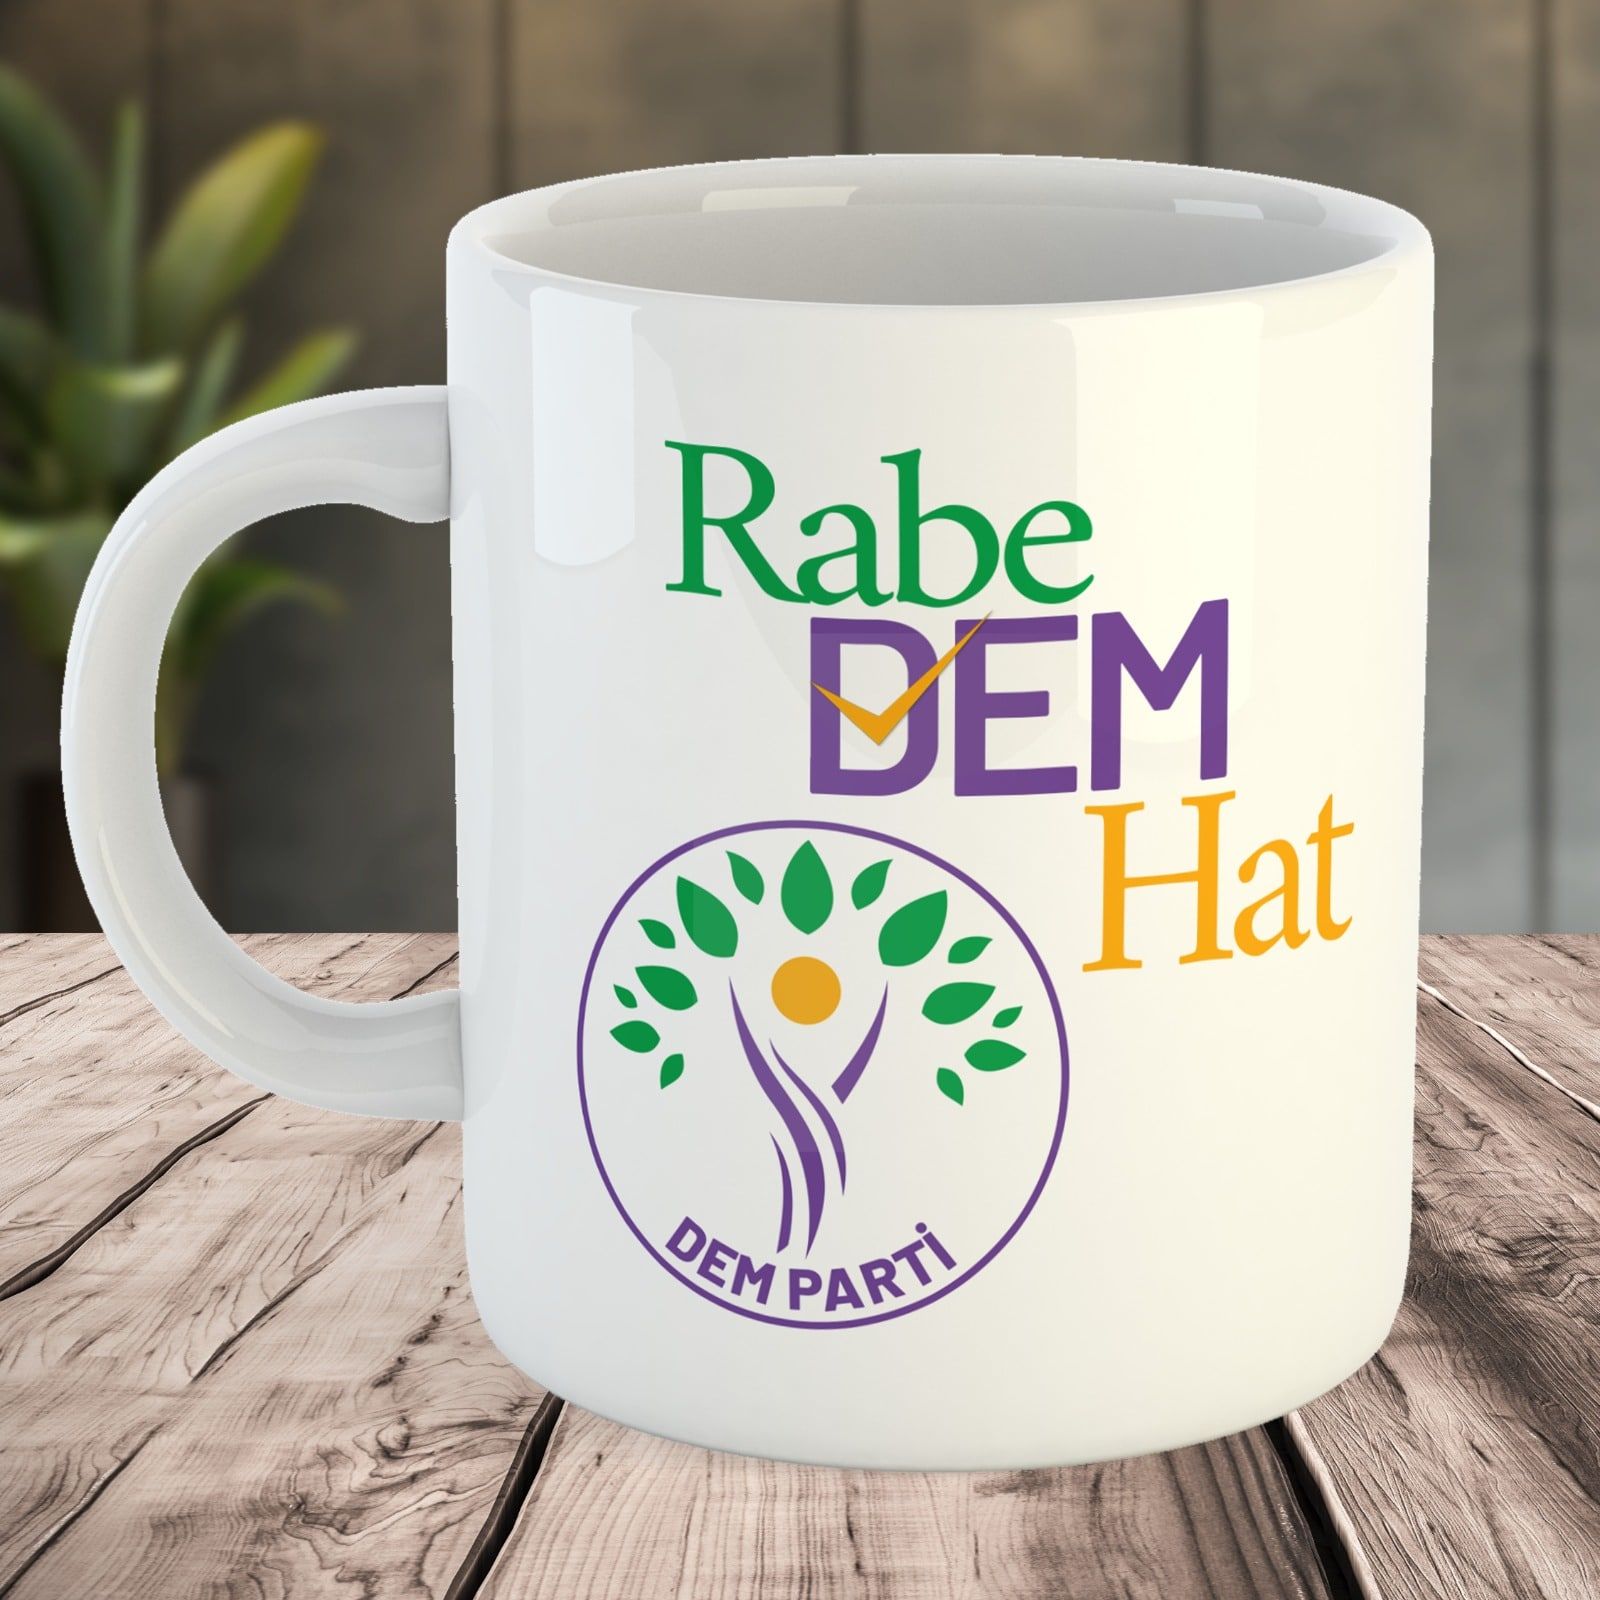 DEM Parti Tasarımlı Porselen Kupa Bardak - Rabe DEM Hat